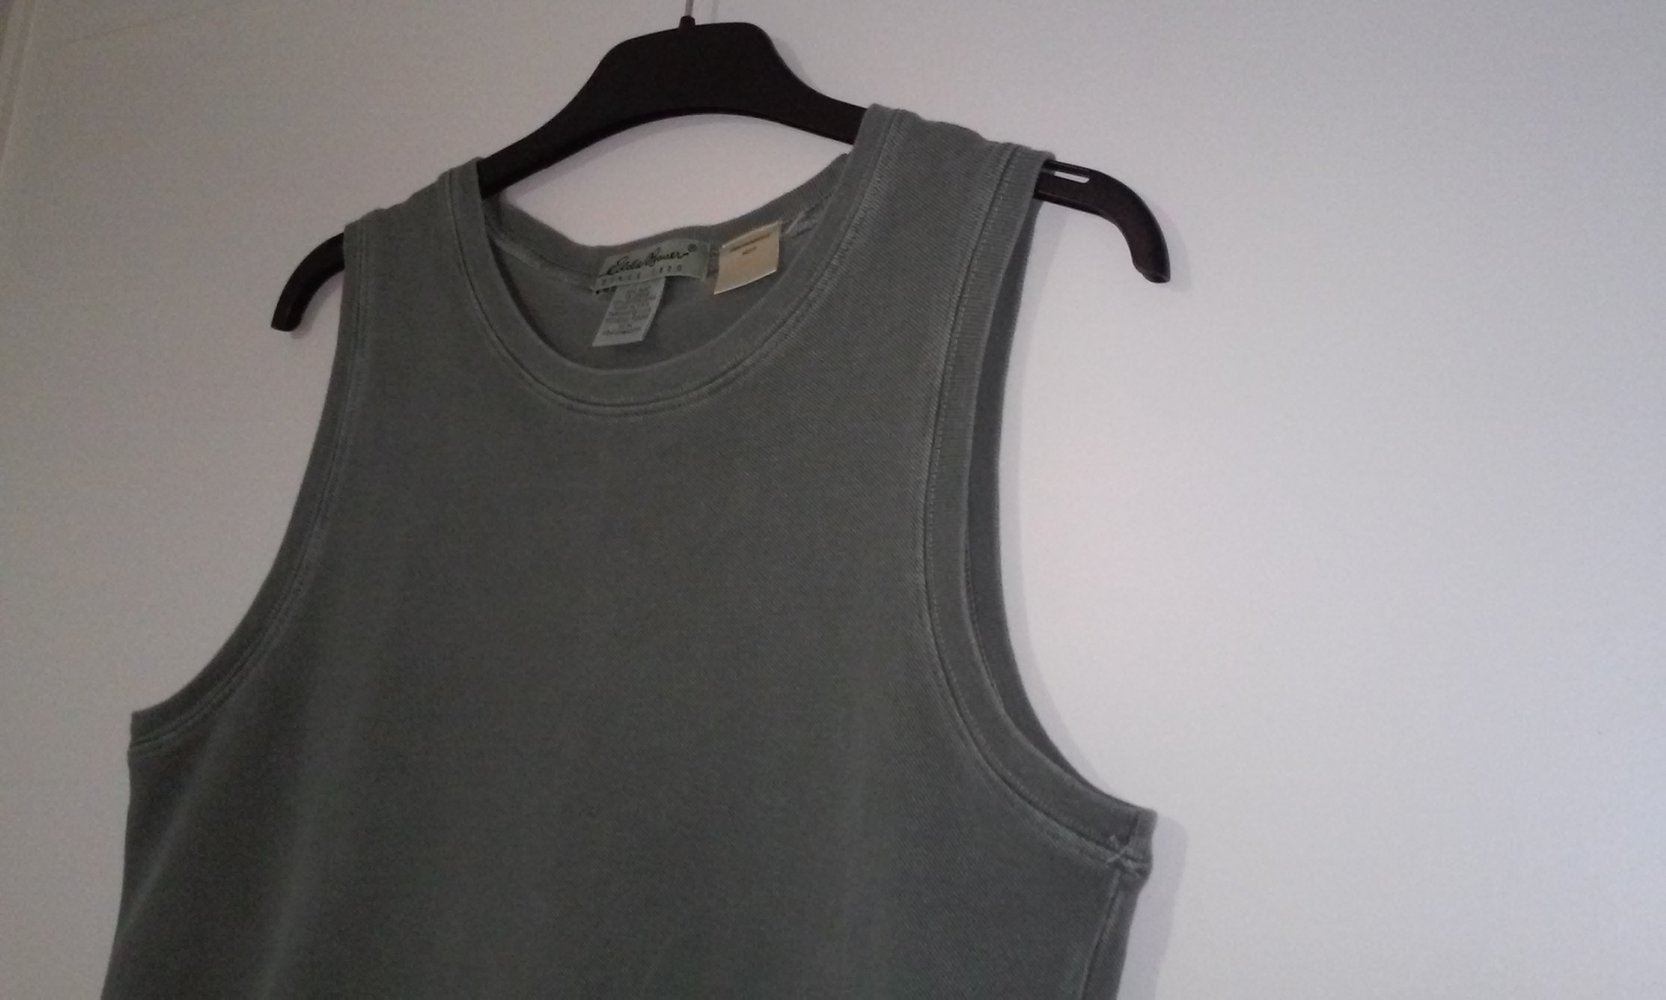 Eddie Bauer Damen Tanktop Shirt Top in denim/olivgrün Made in USA (erheblich günstiger)